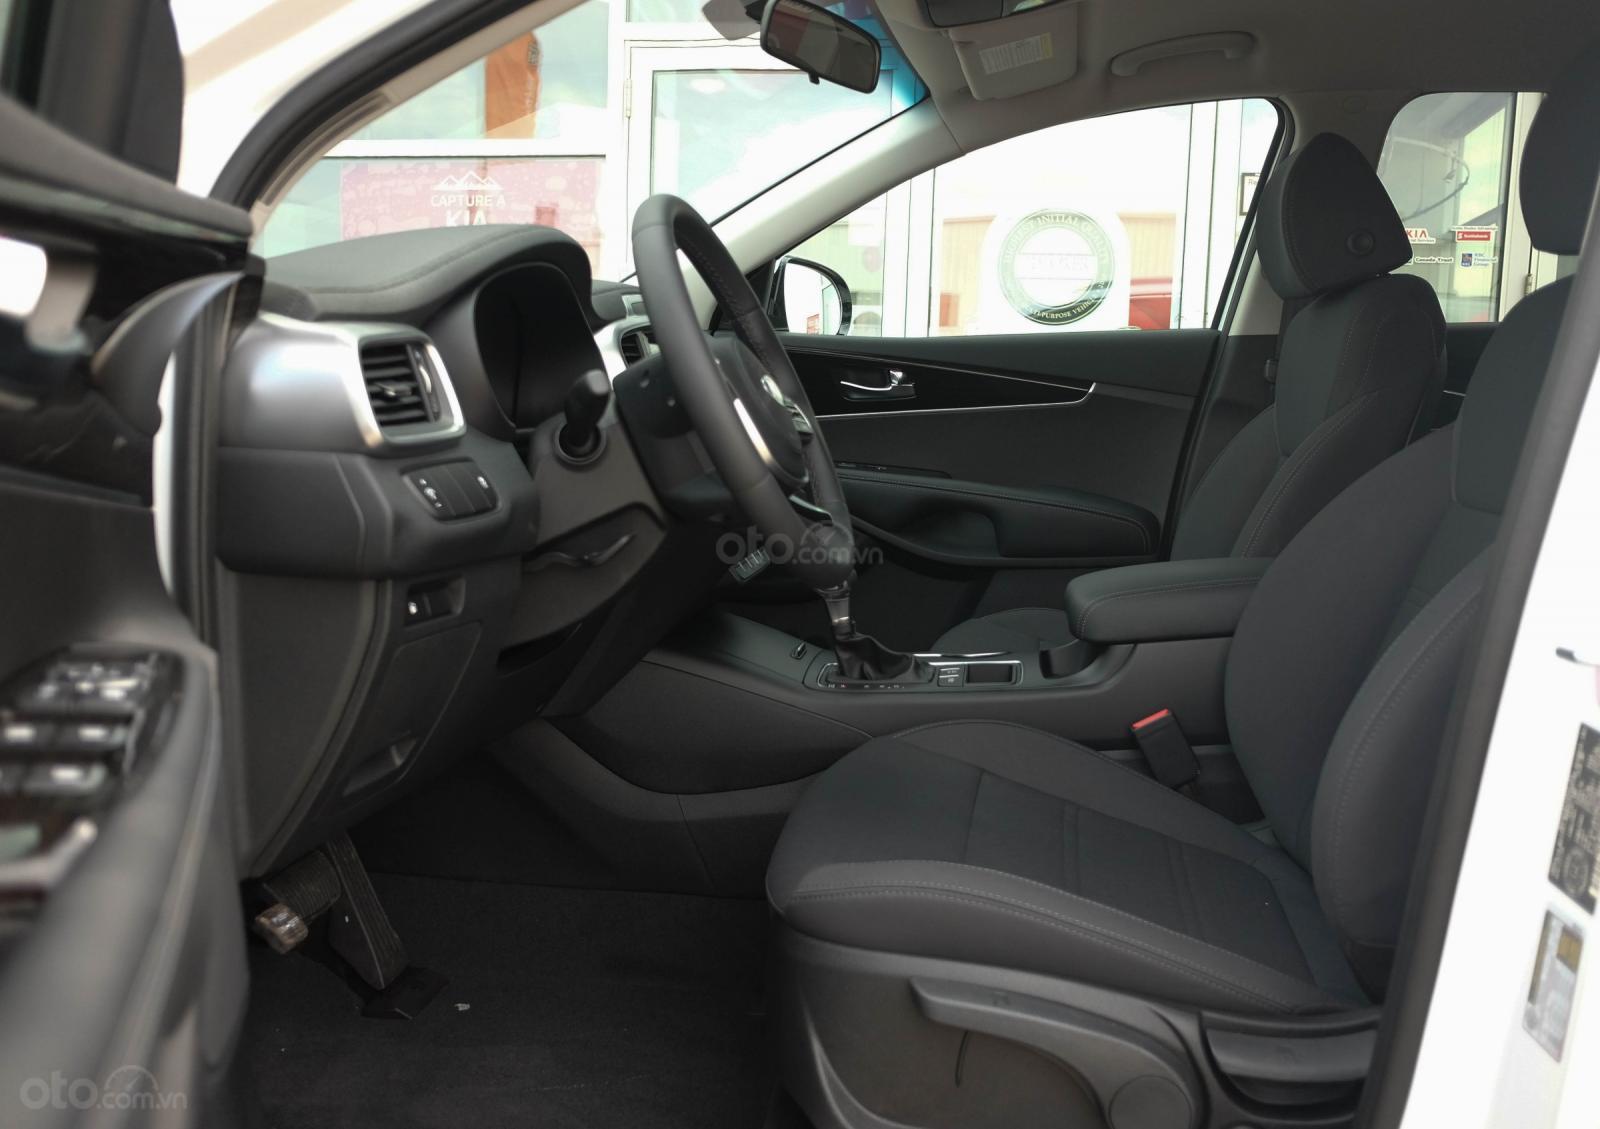 Đánh giá xe Kia Sorento ​2019 về chỗ ngồi - Thiết kế ghế trước hợp lý